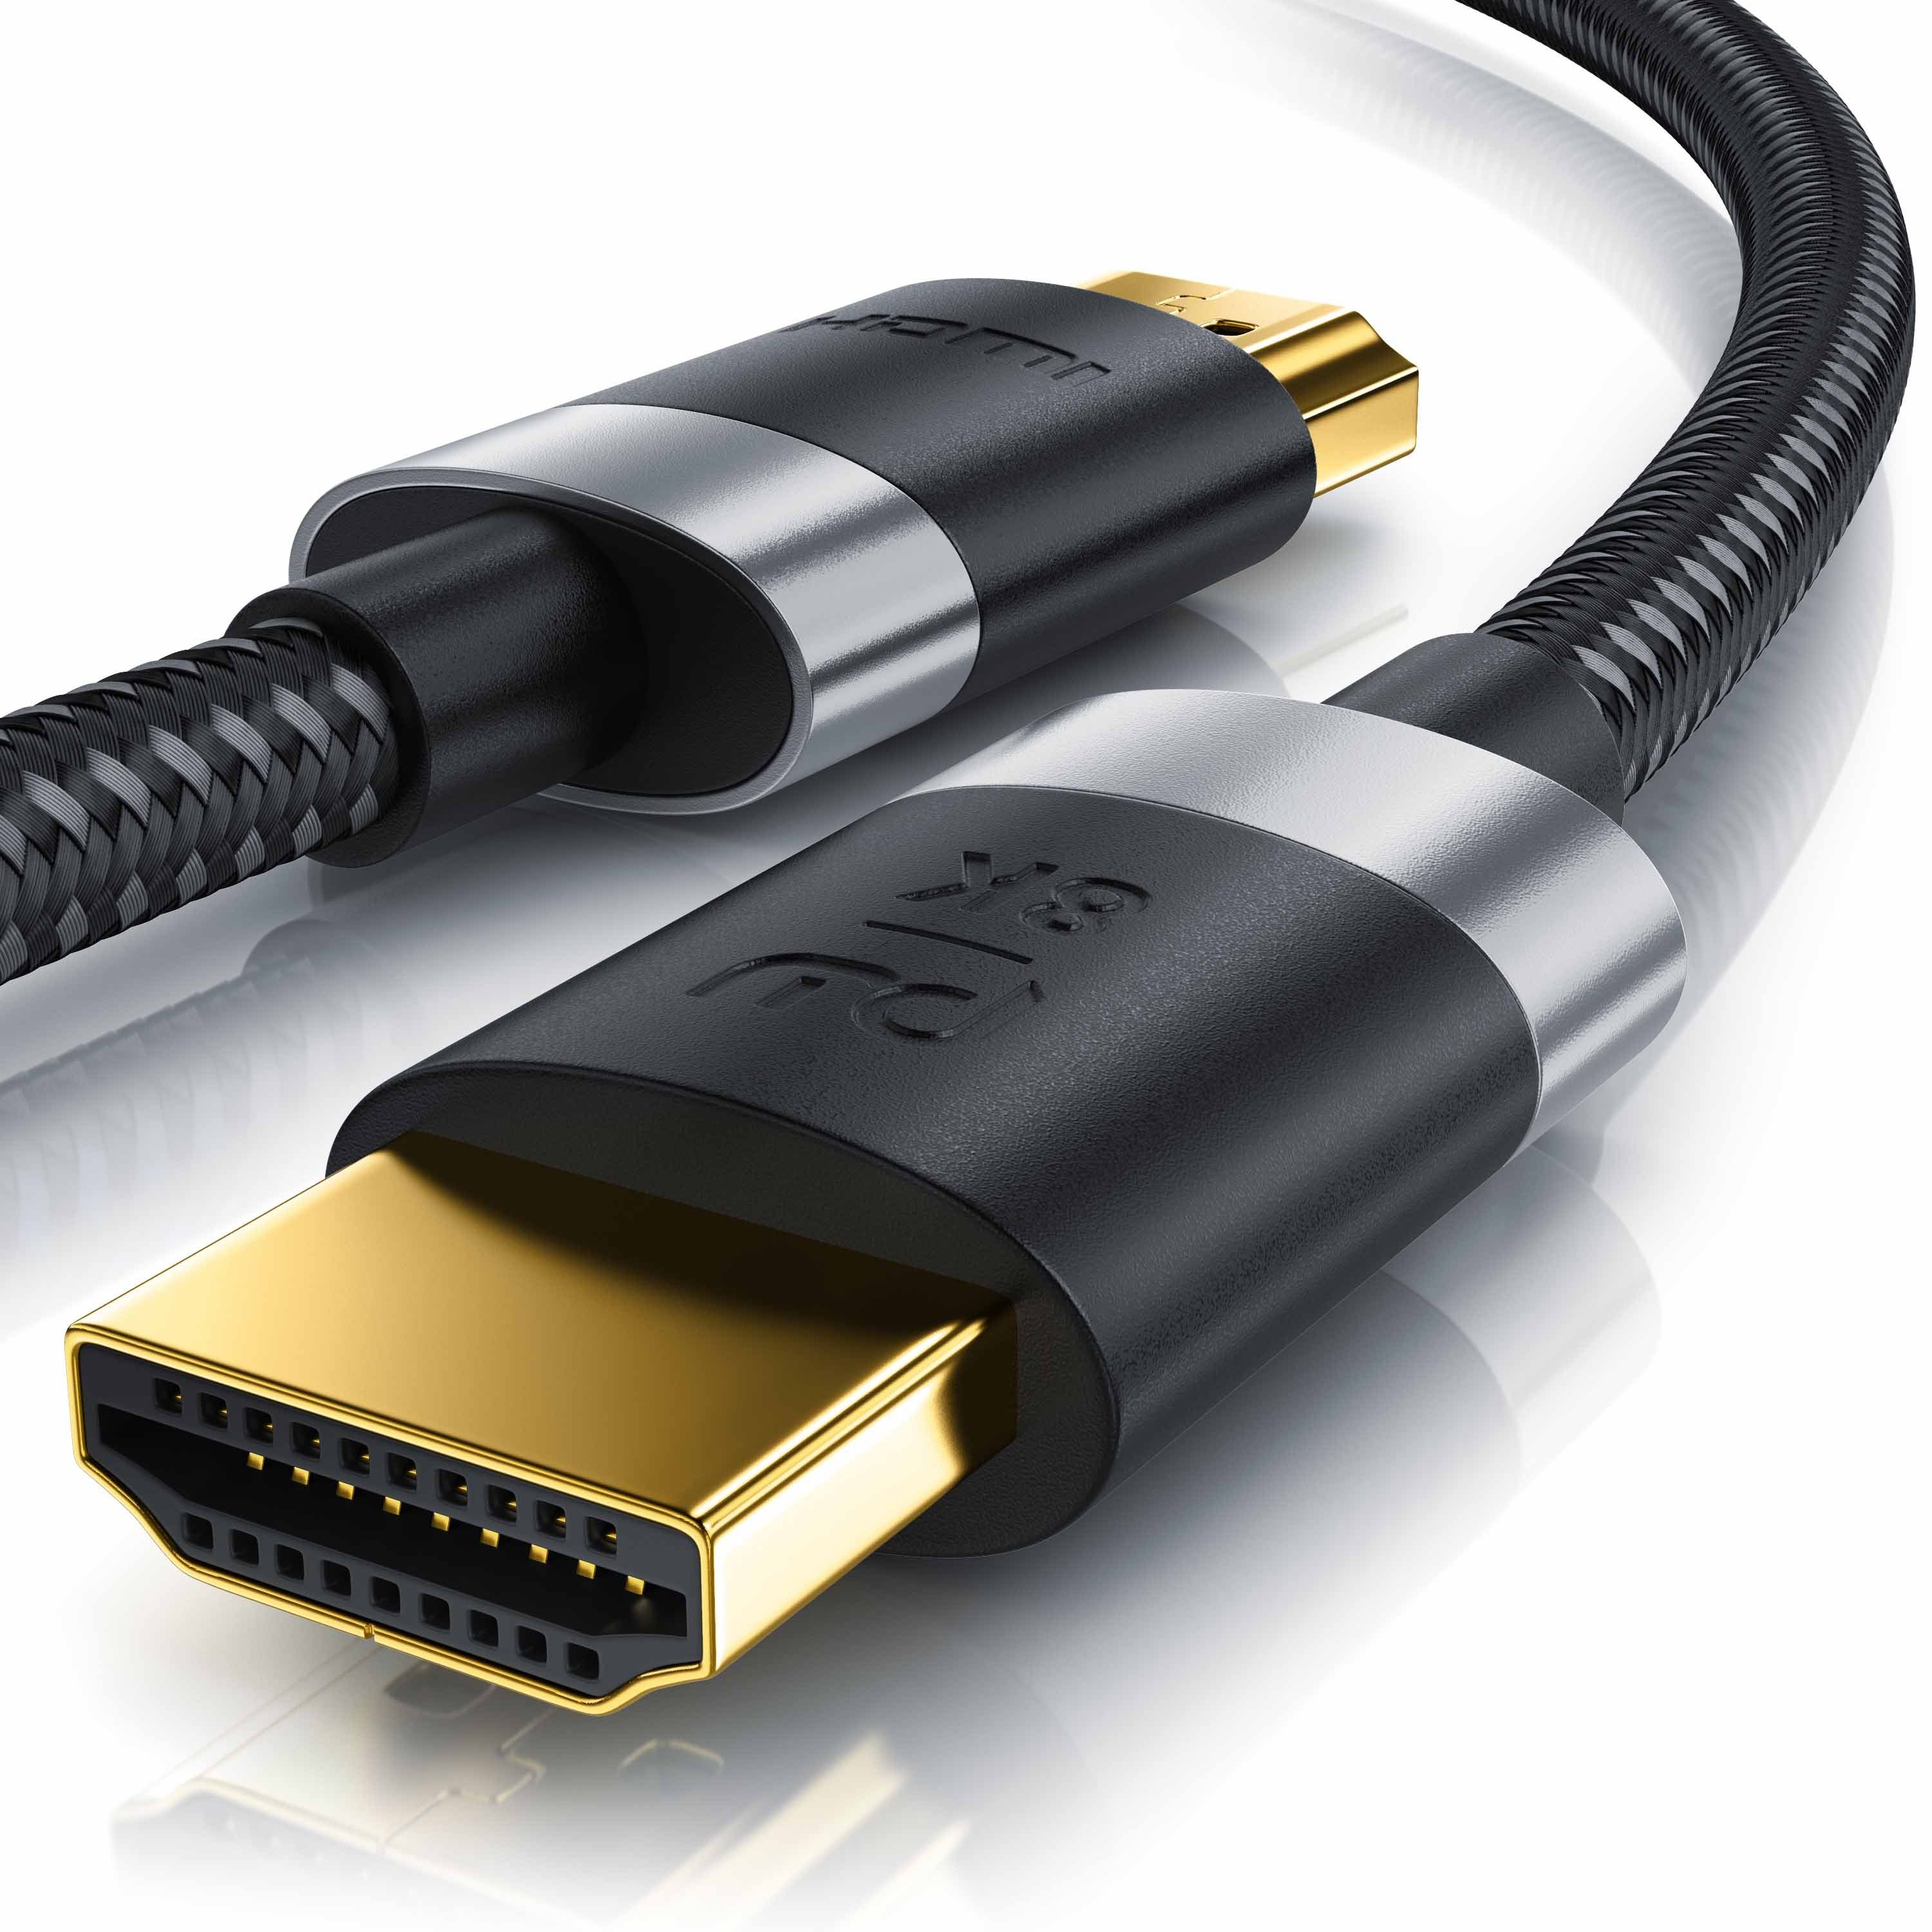 Primewire HDMI-Kabel, HDMI Typ A, HDMI Typ A Stecker, HDMI Typ A Stecker  (50 cm), 8K Premium HDMI Ultra High Speed Kabel 2.1 mit Nylonummantelung  7680 x 4320 @ 120 Hz mit DSC online kaufen | OTTO